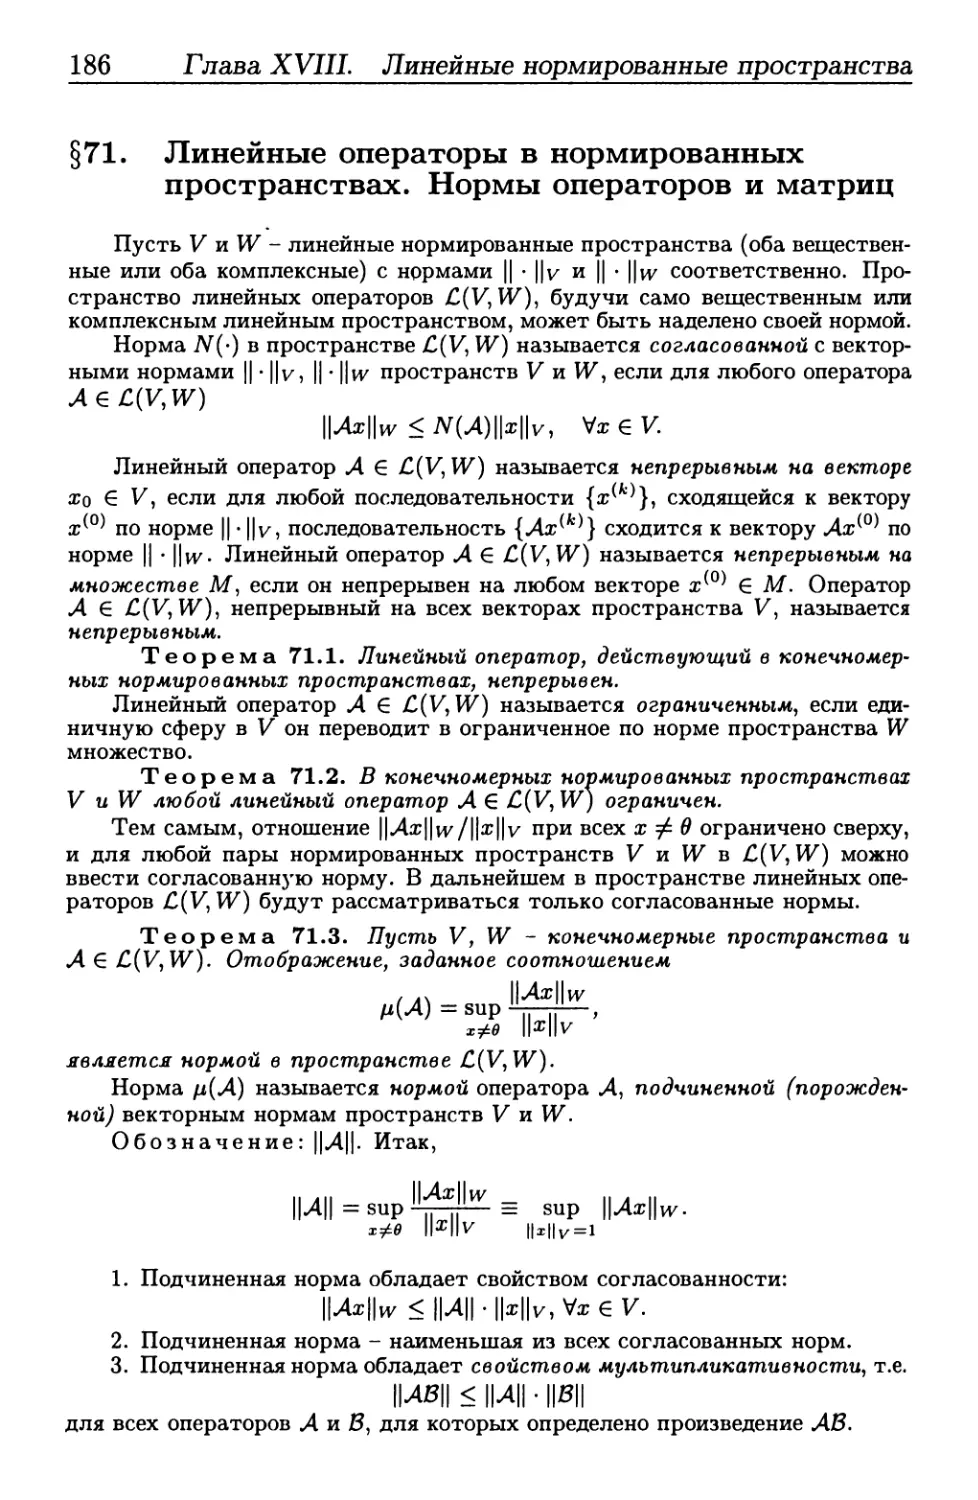 § 71. Линейные операторы в нормированных пространствах. Нормы операторов и матриц